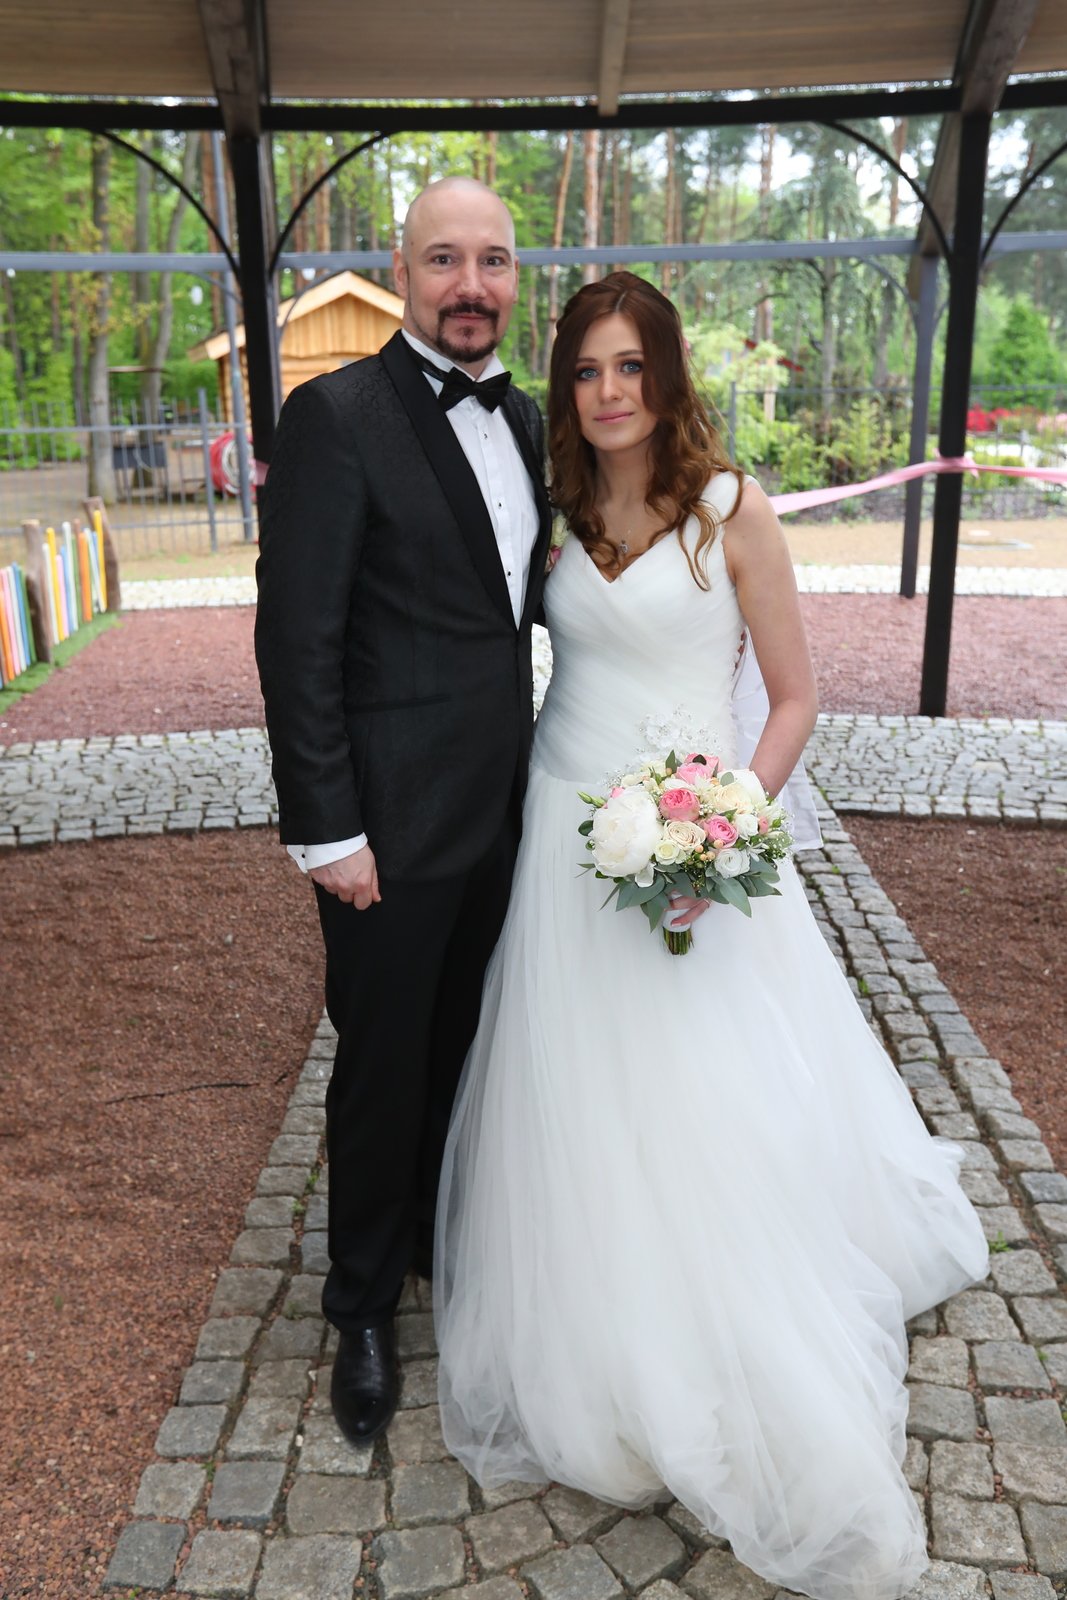 Svatba Bohuše Matuše a Lucie Palkaninové